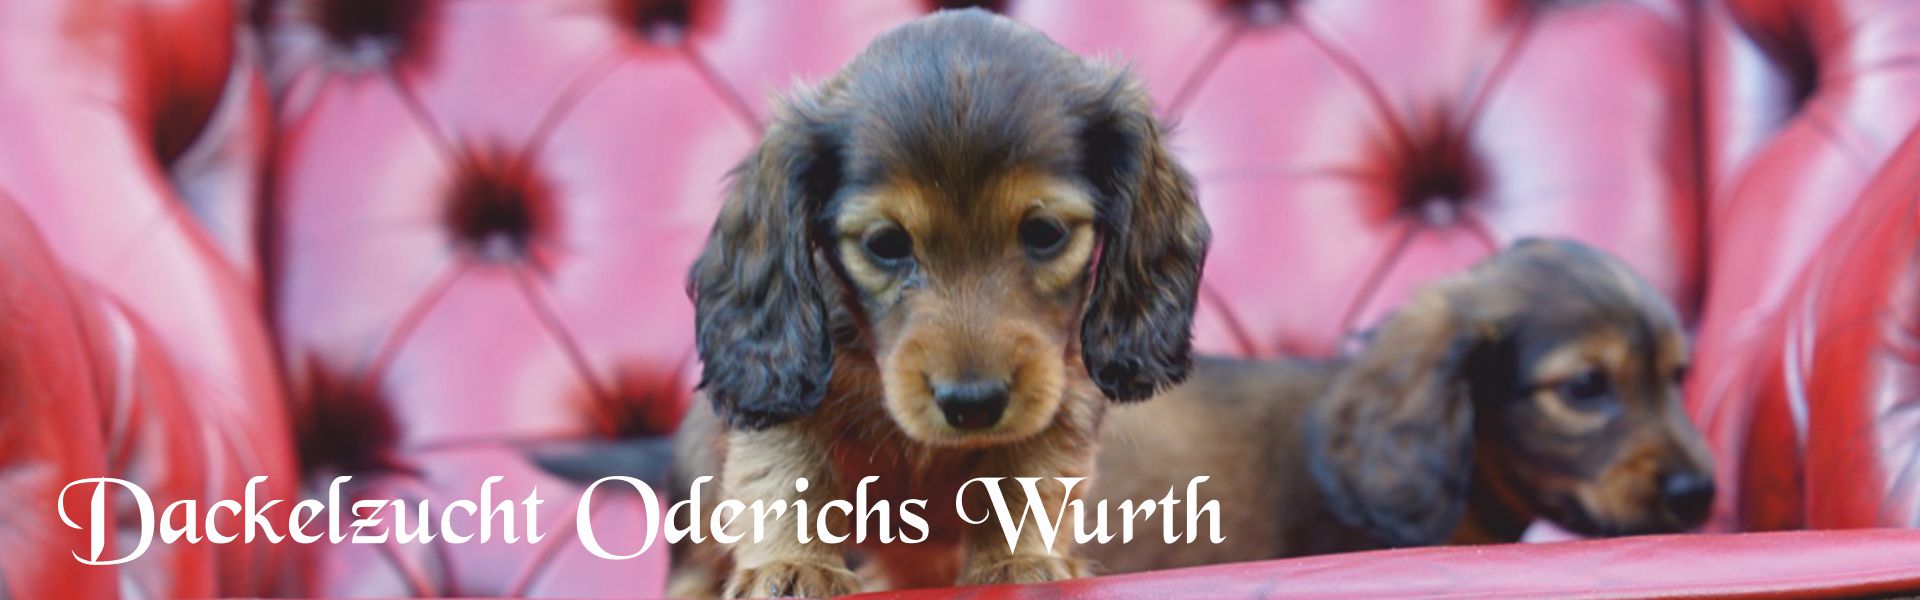 www.dackelzucht-oderichswurth.de